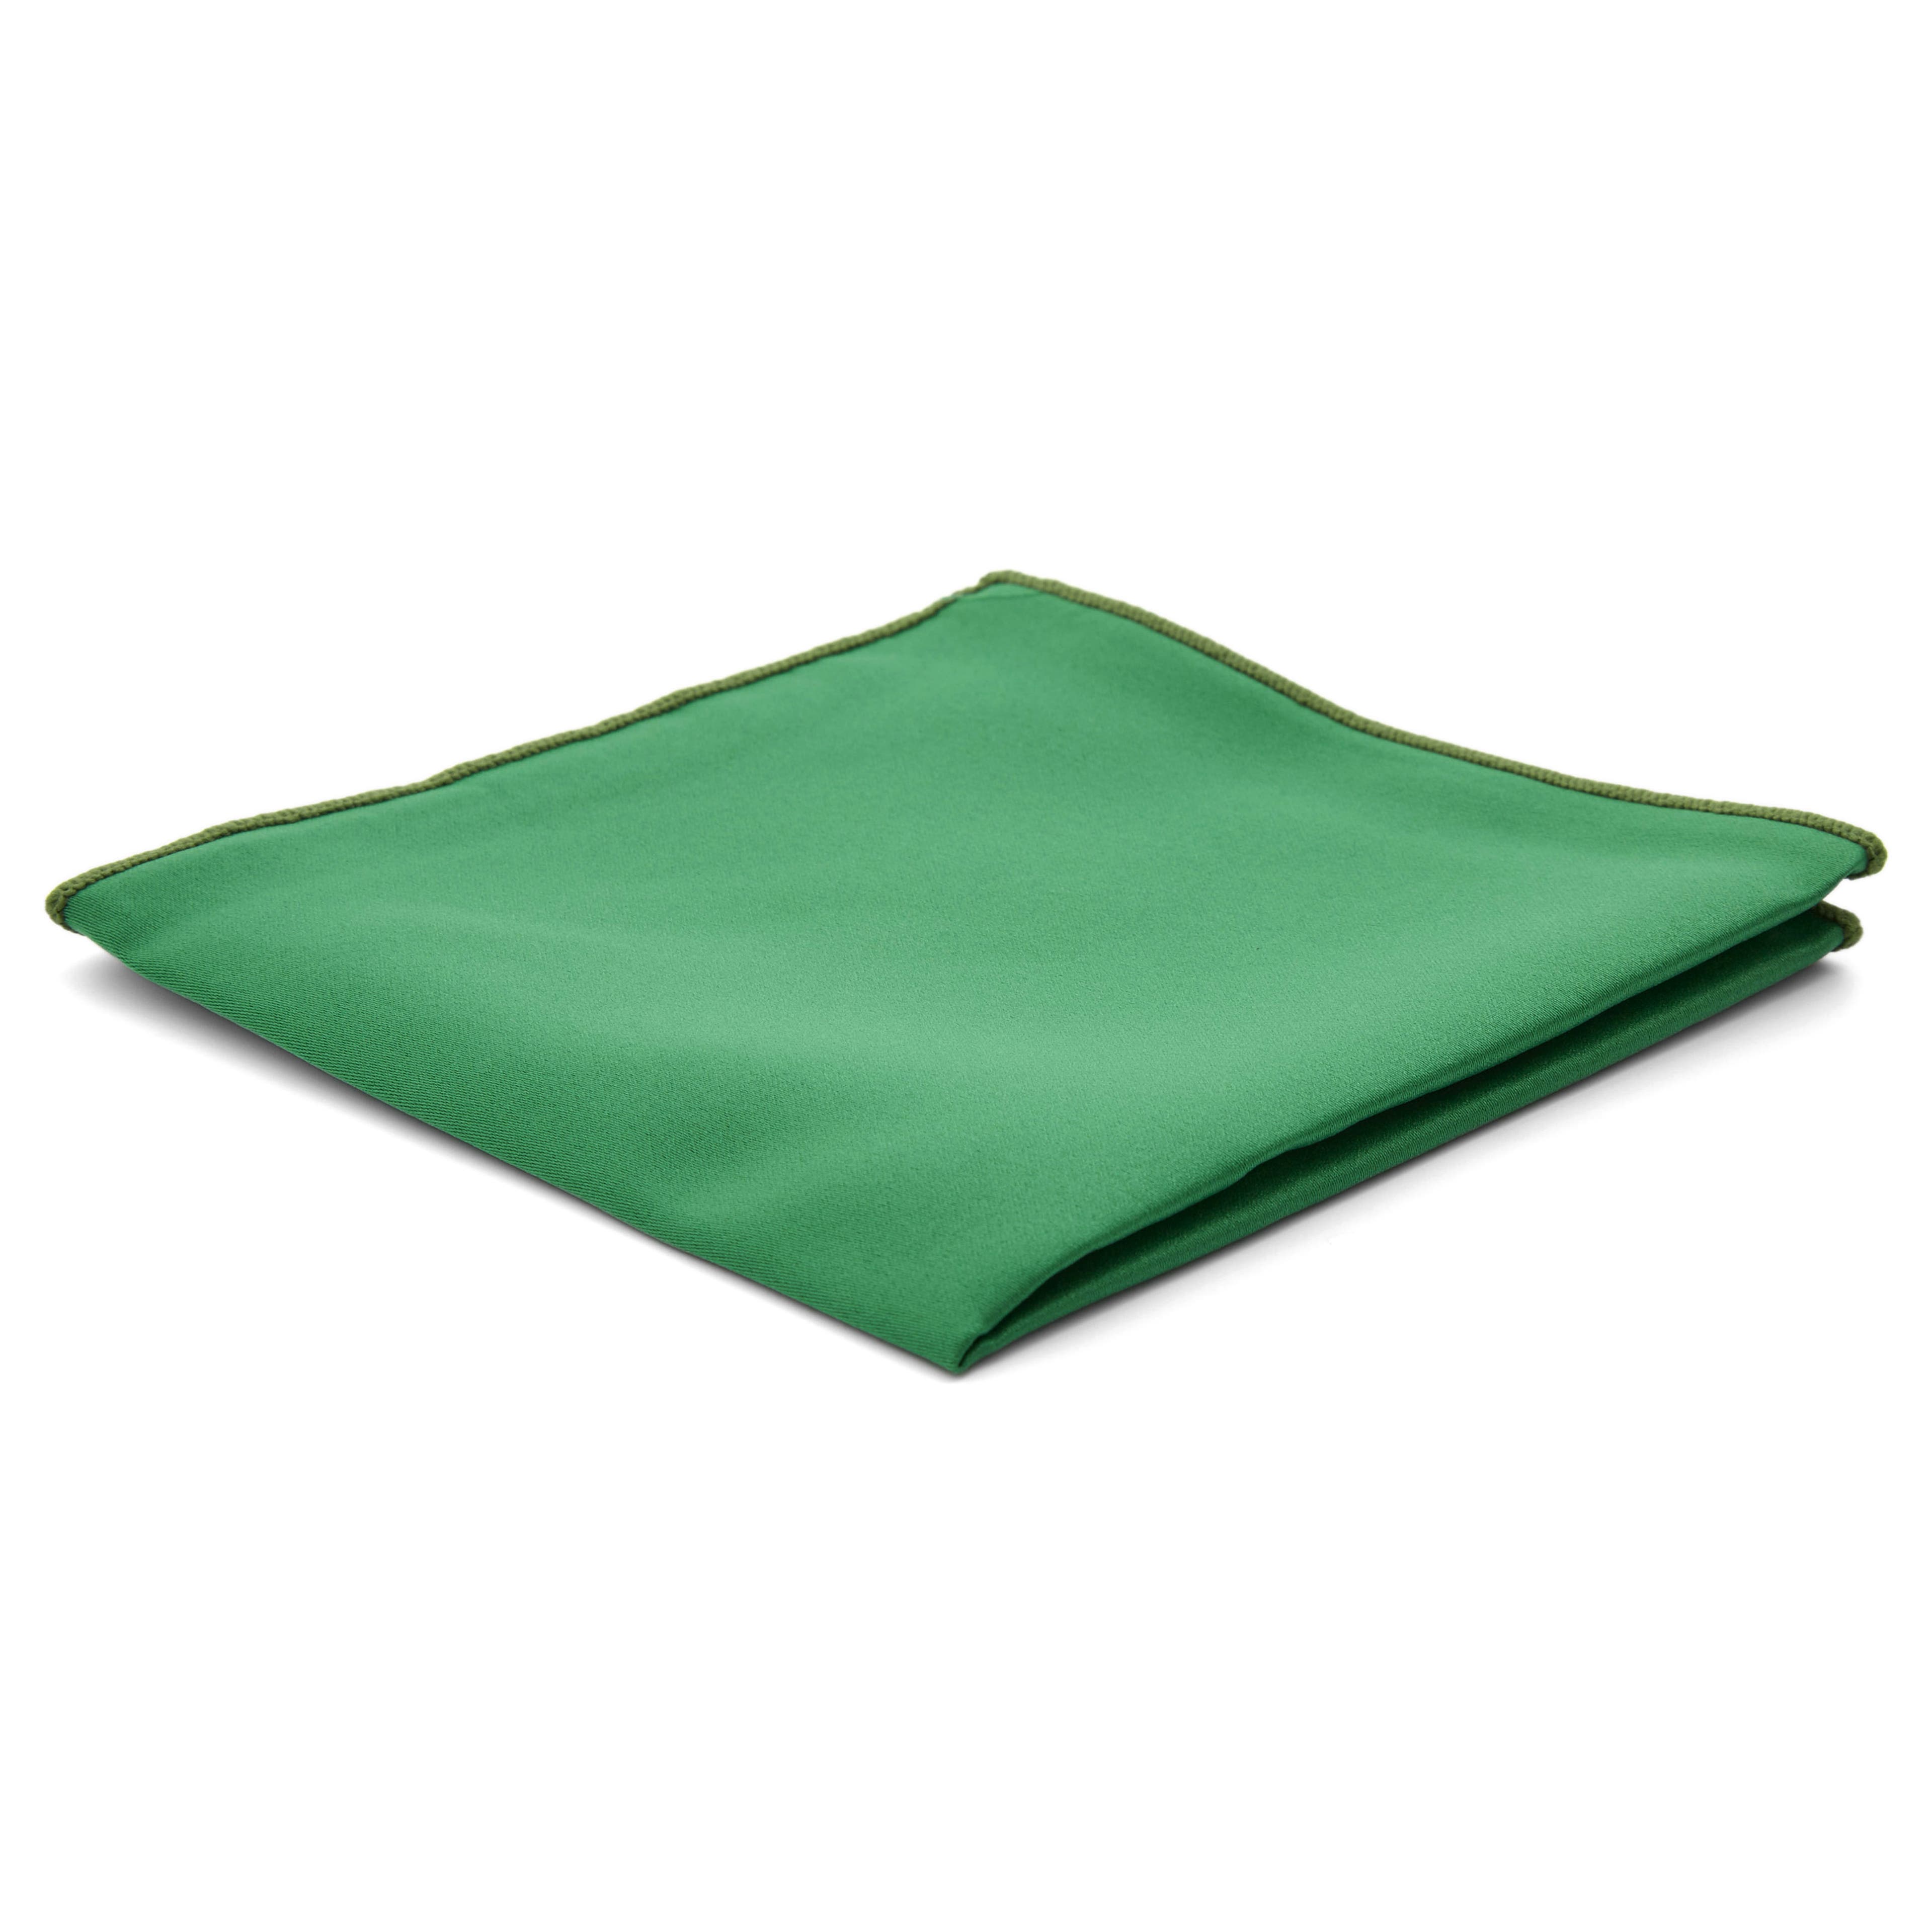 Smaragdzöld egyszerű díszzsebkendő